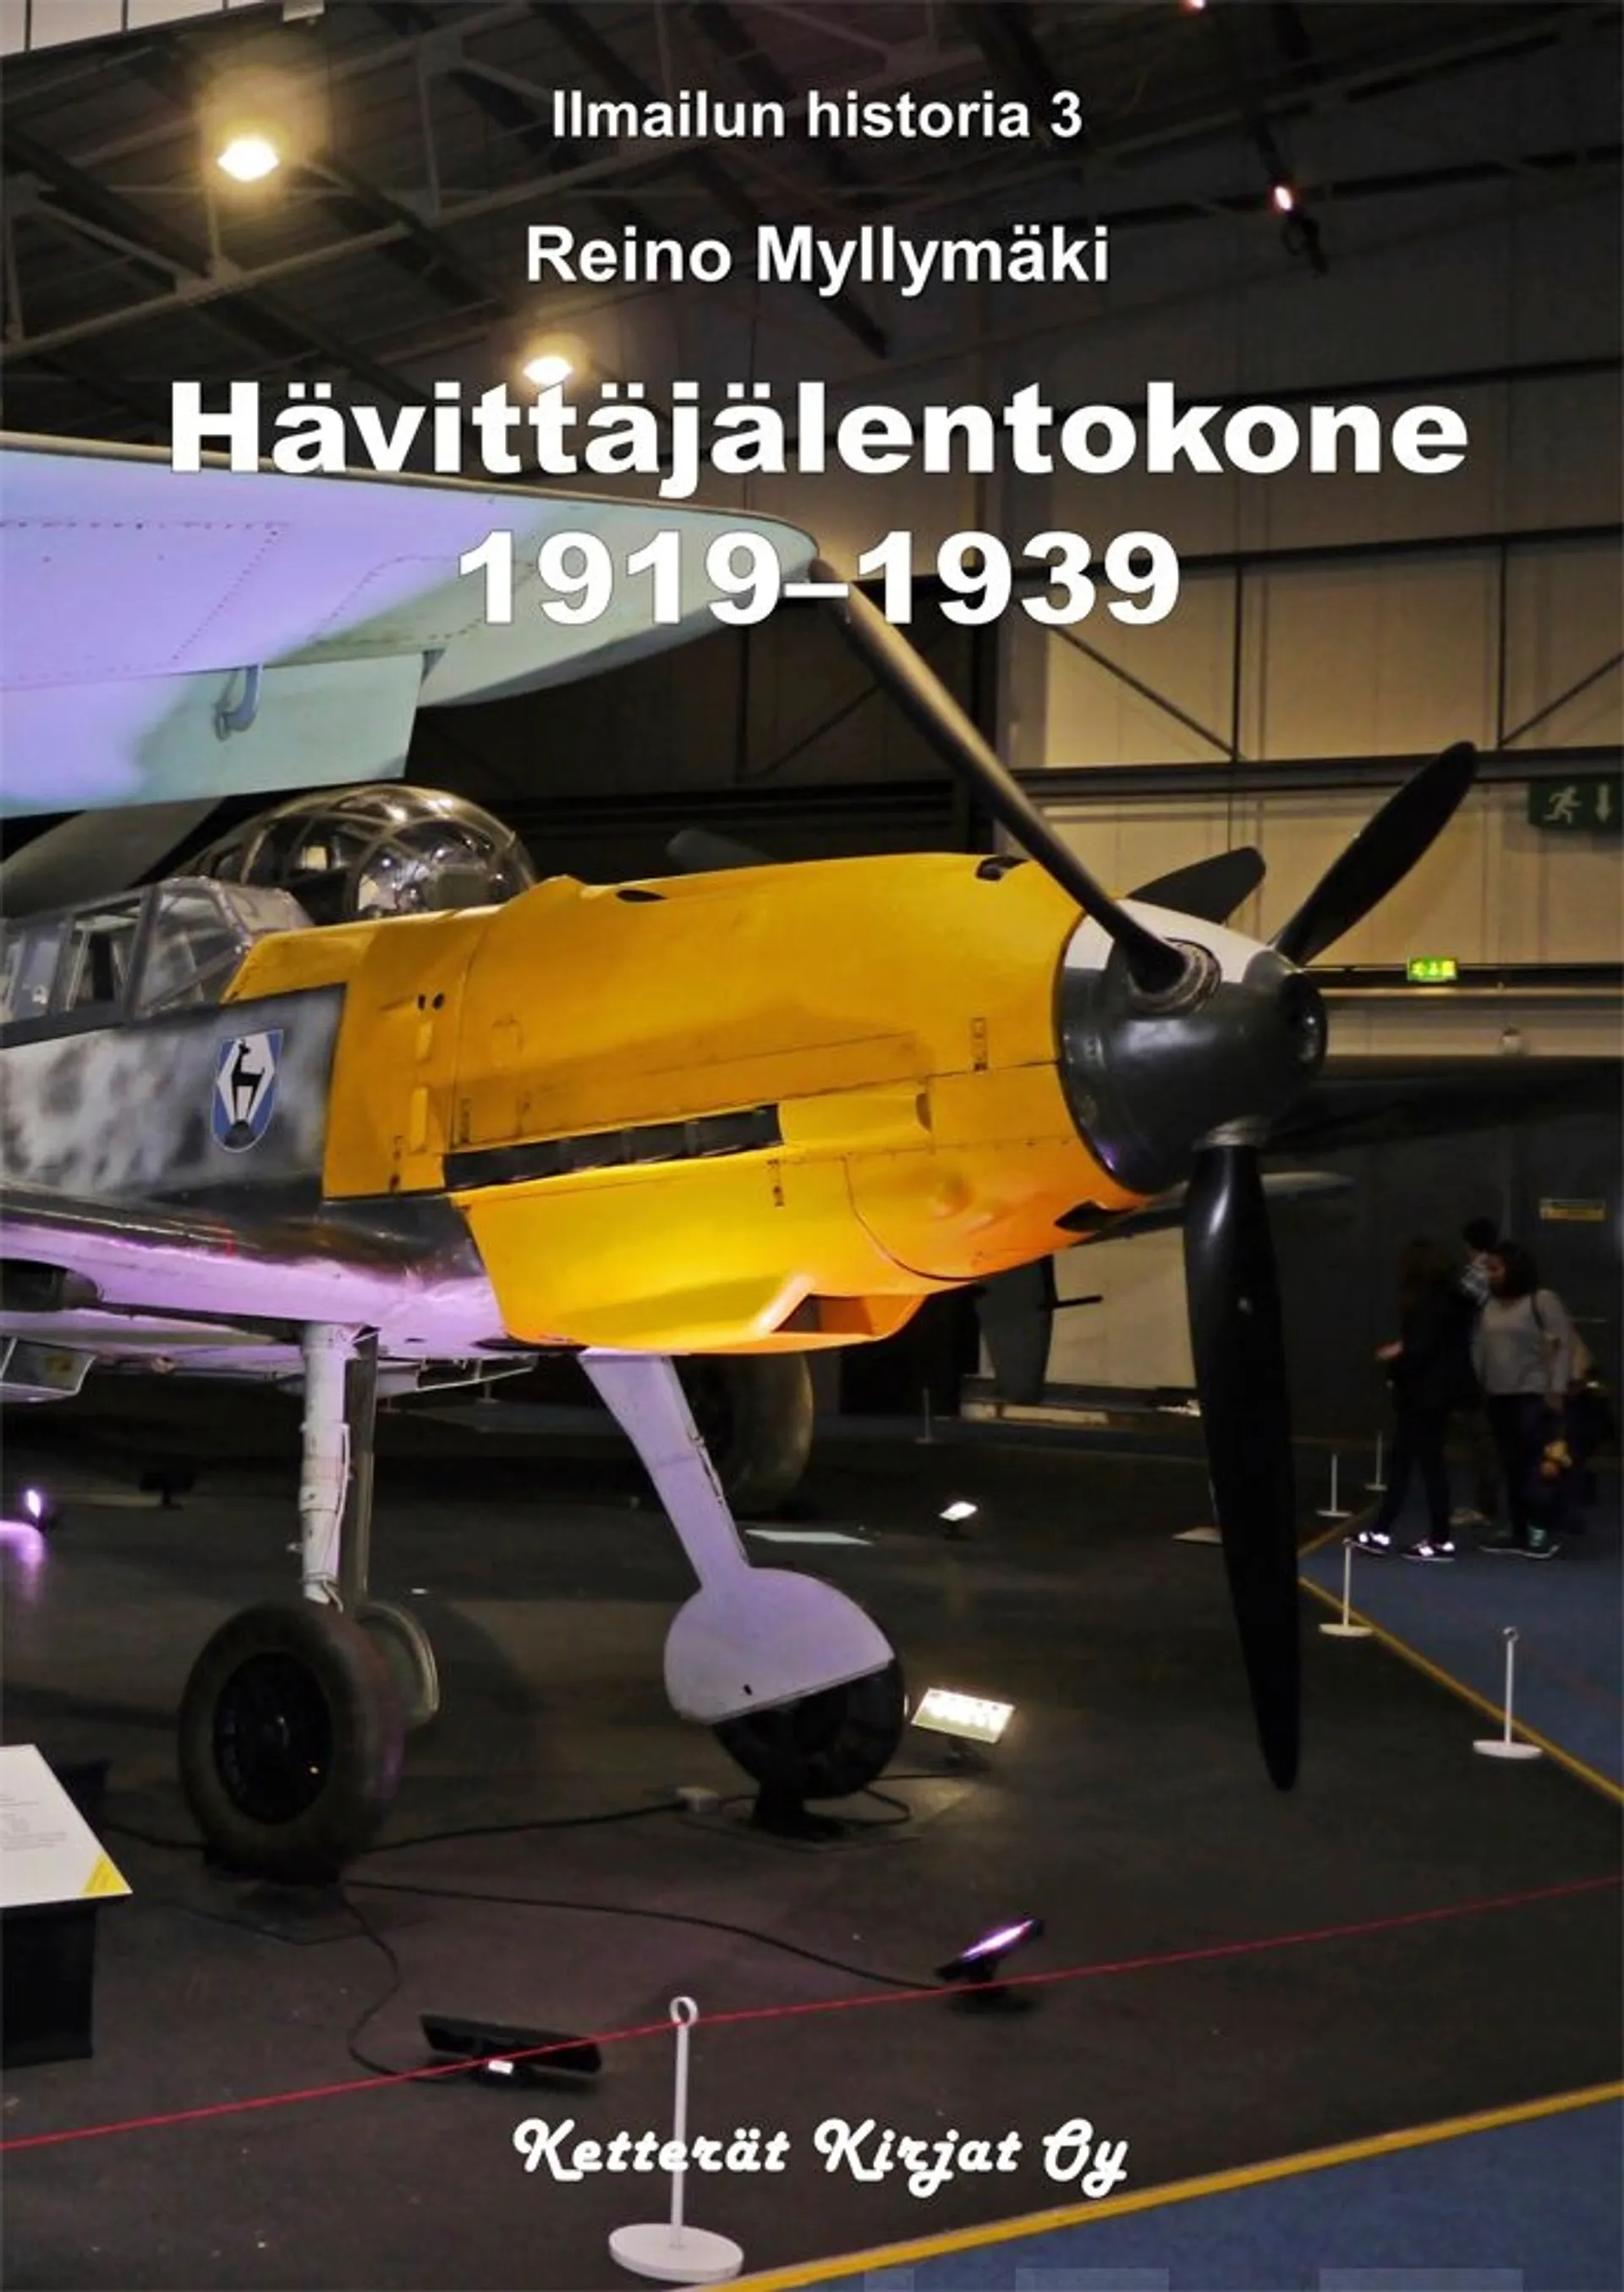 Myllymäki, Hävittäjälentokone 1919-1939